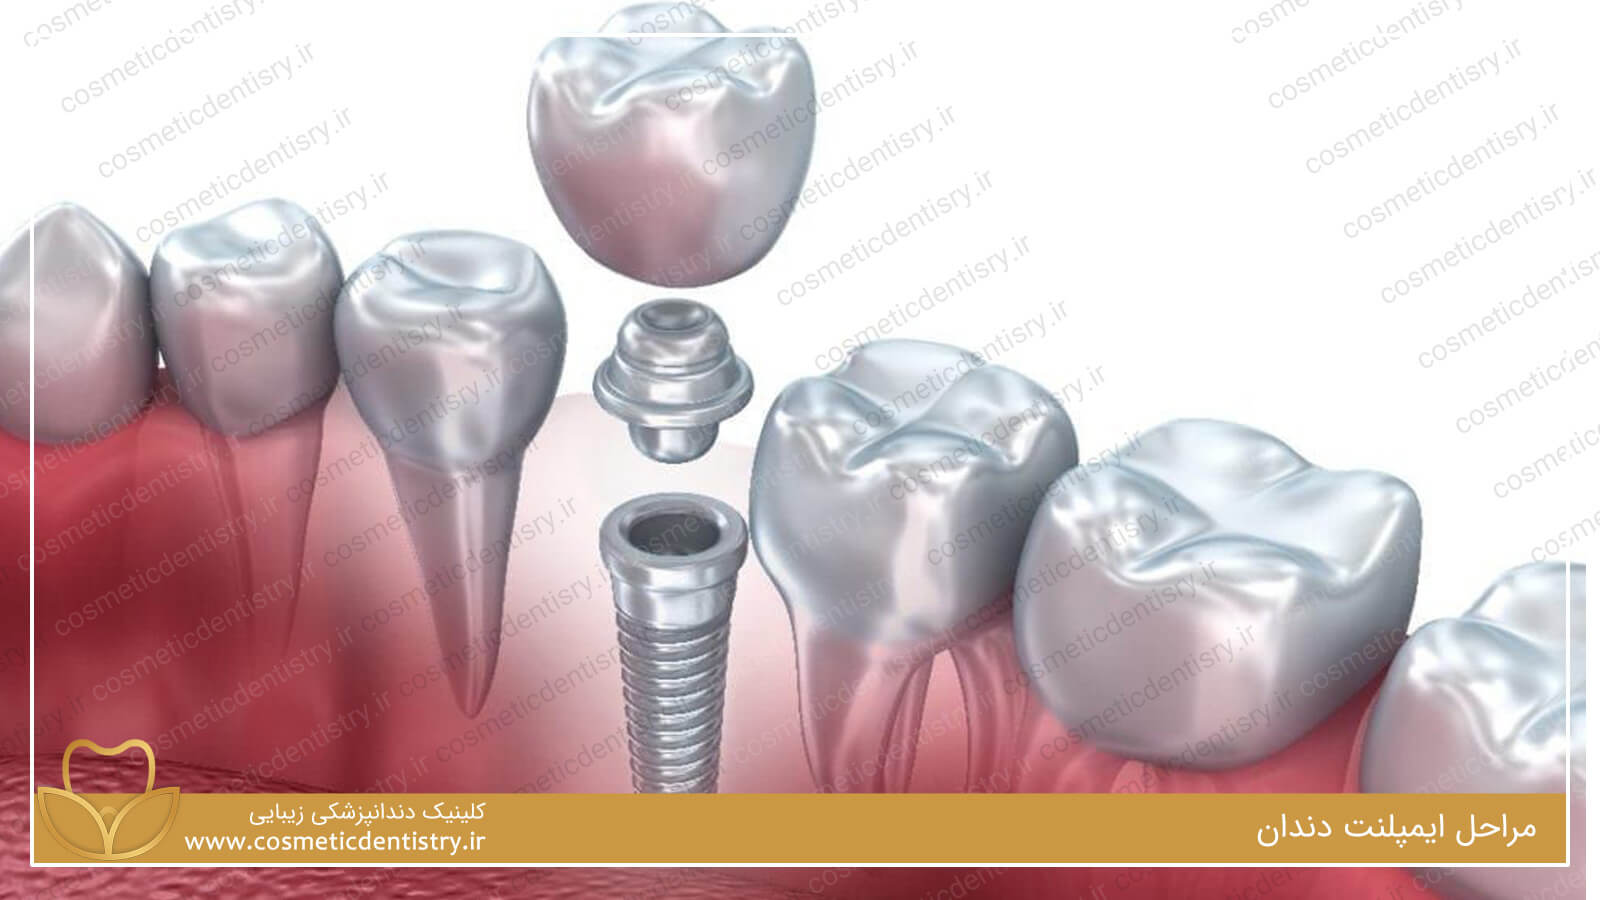  مراحل ایمپلنت دندان